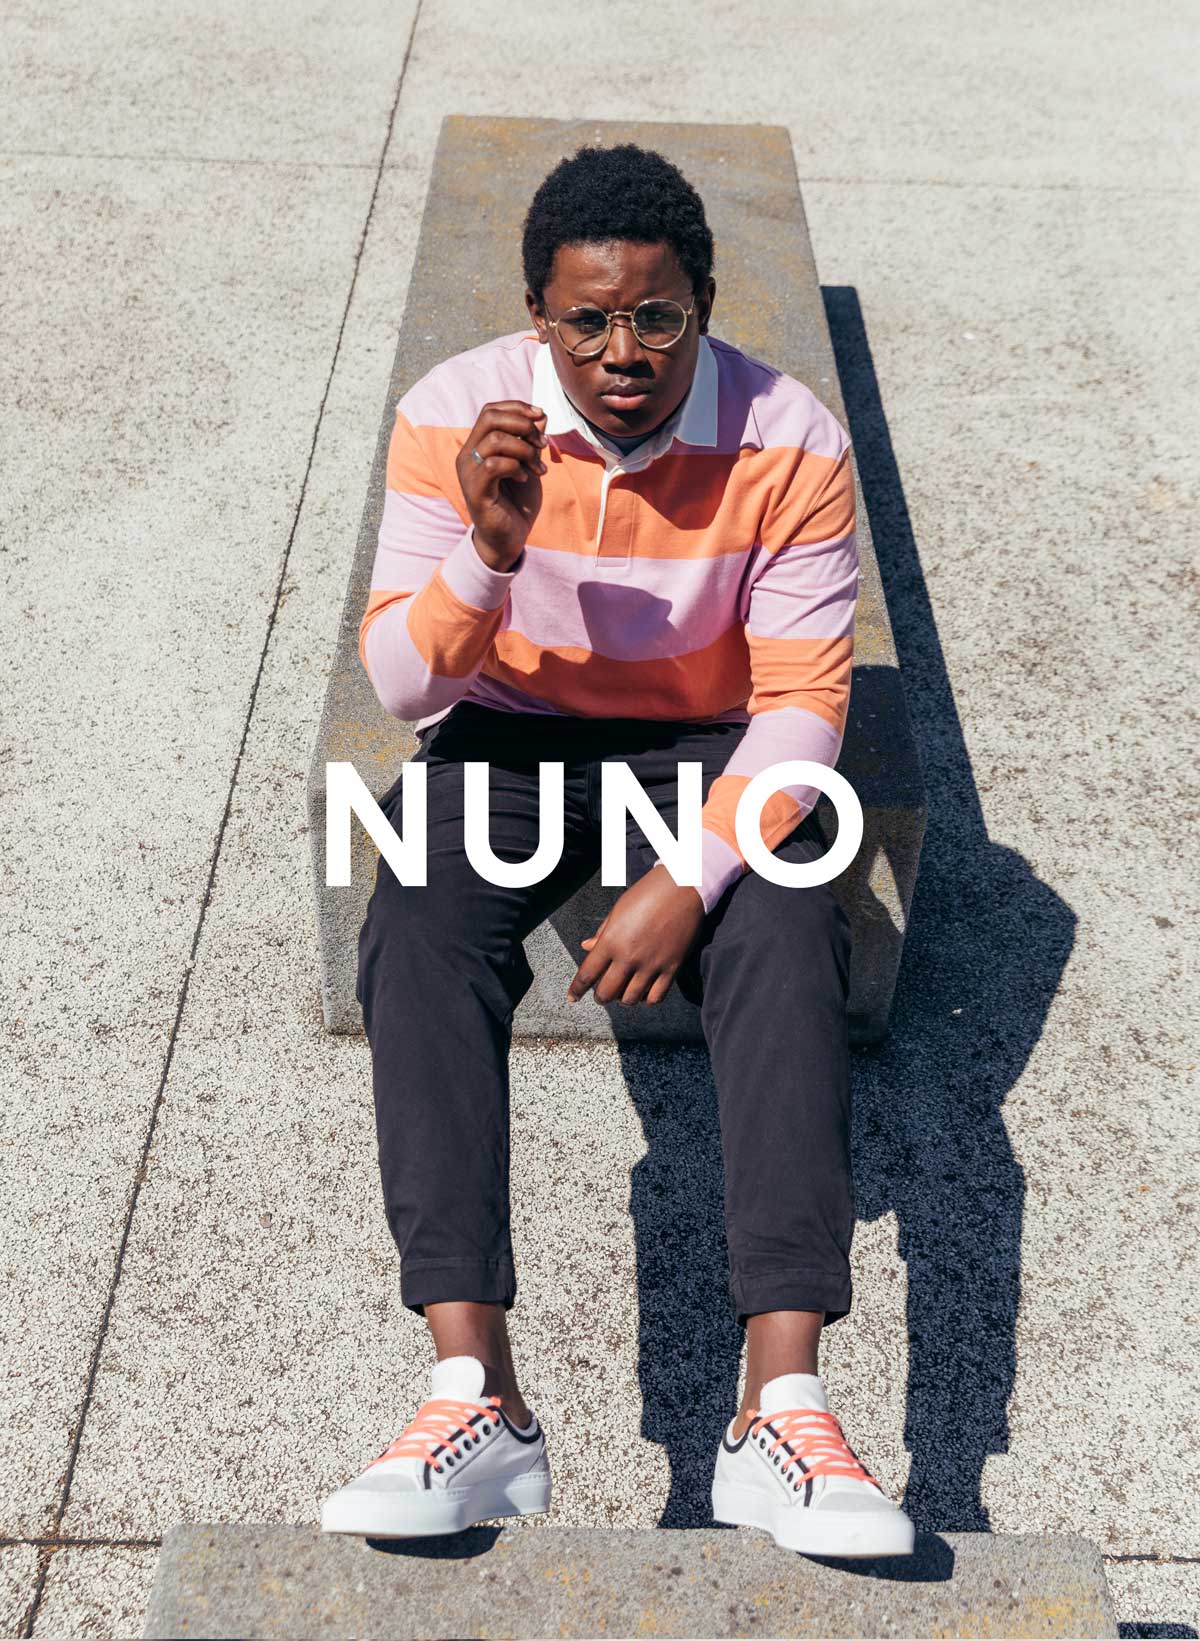 Nuno sentado en una pared, vistiendo sneakers De Diverge, generando un impacto social a través del proyecto Imagine.